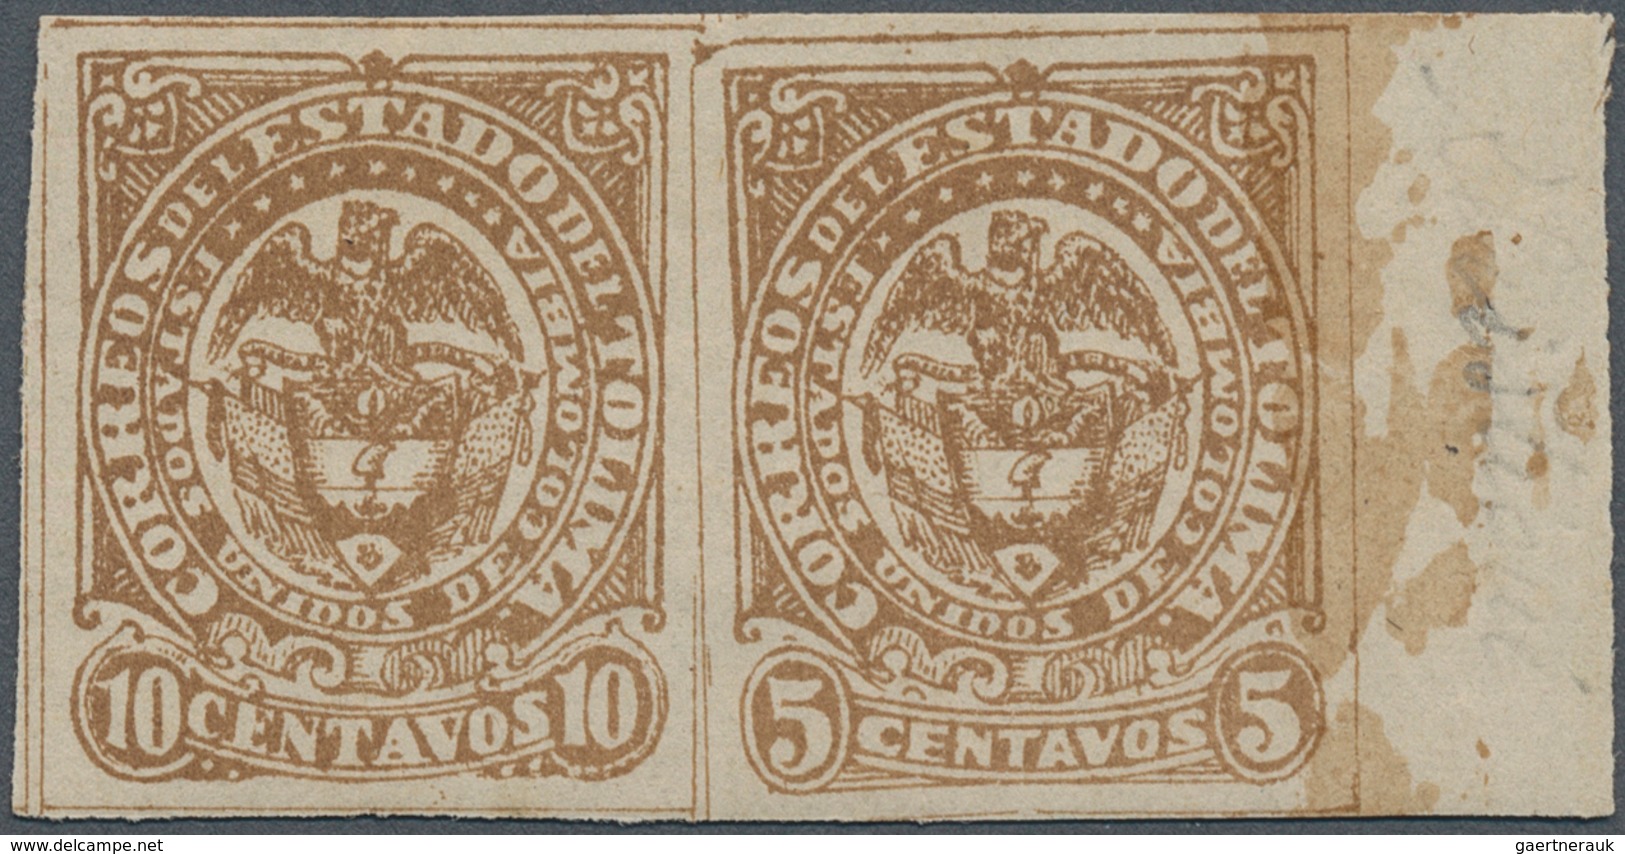 Kolumbien - Departamentos: Tolima: 1886, 5 C. Brown Se-tenent With Error 10C. Brown, Marginal Pair M - Kolumbien